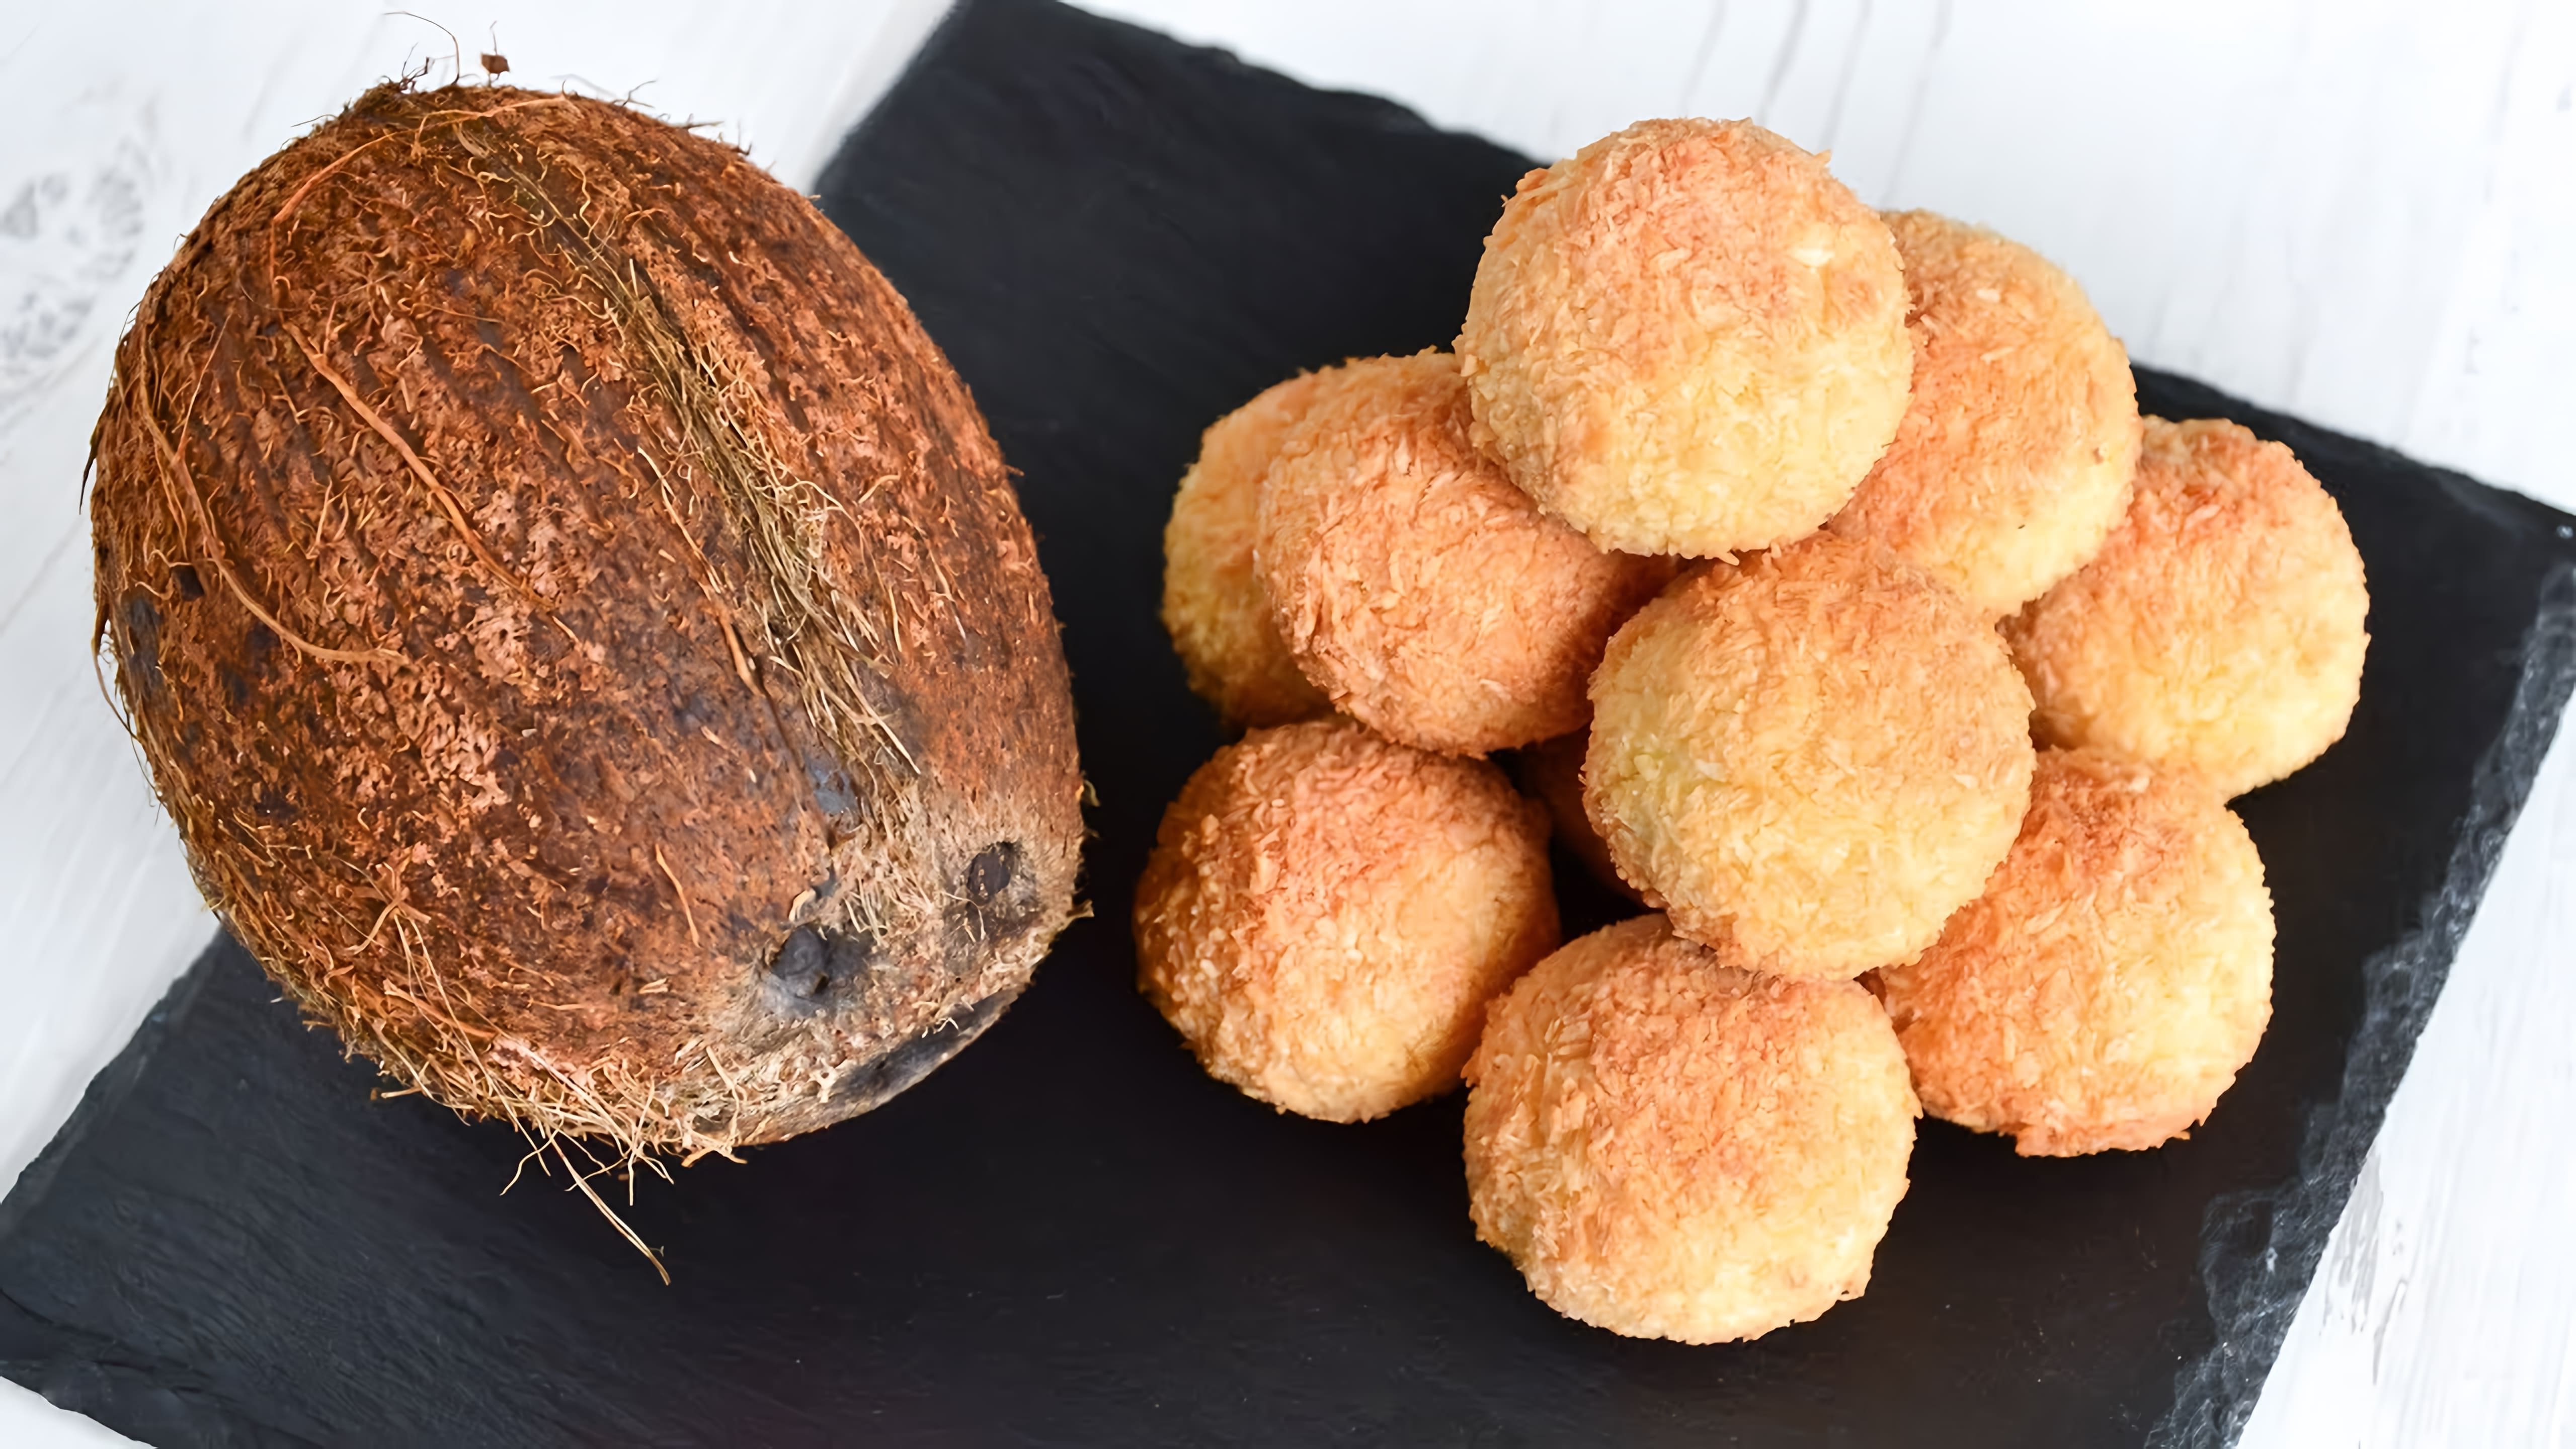 В этом видео демонстрируется процесс приготовления кокосового печенья из трех доступных продуктов: кокосовой стружки, яиц и сахара